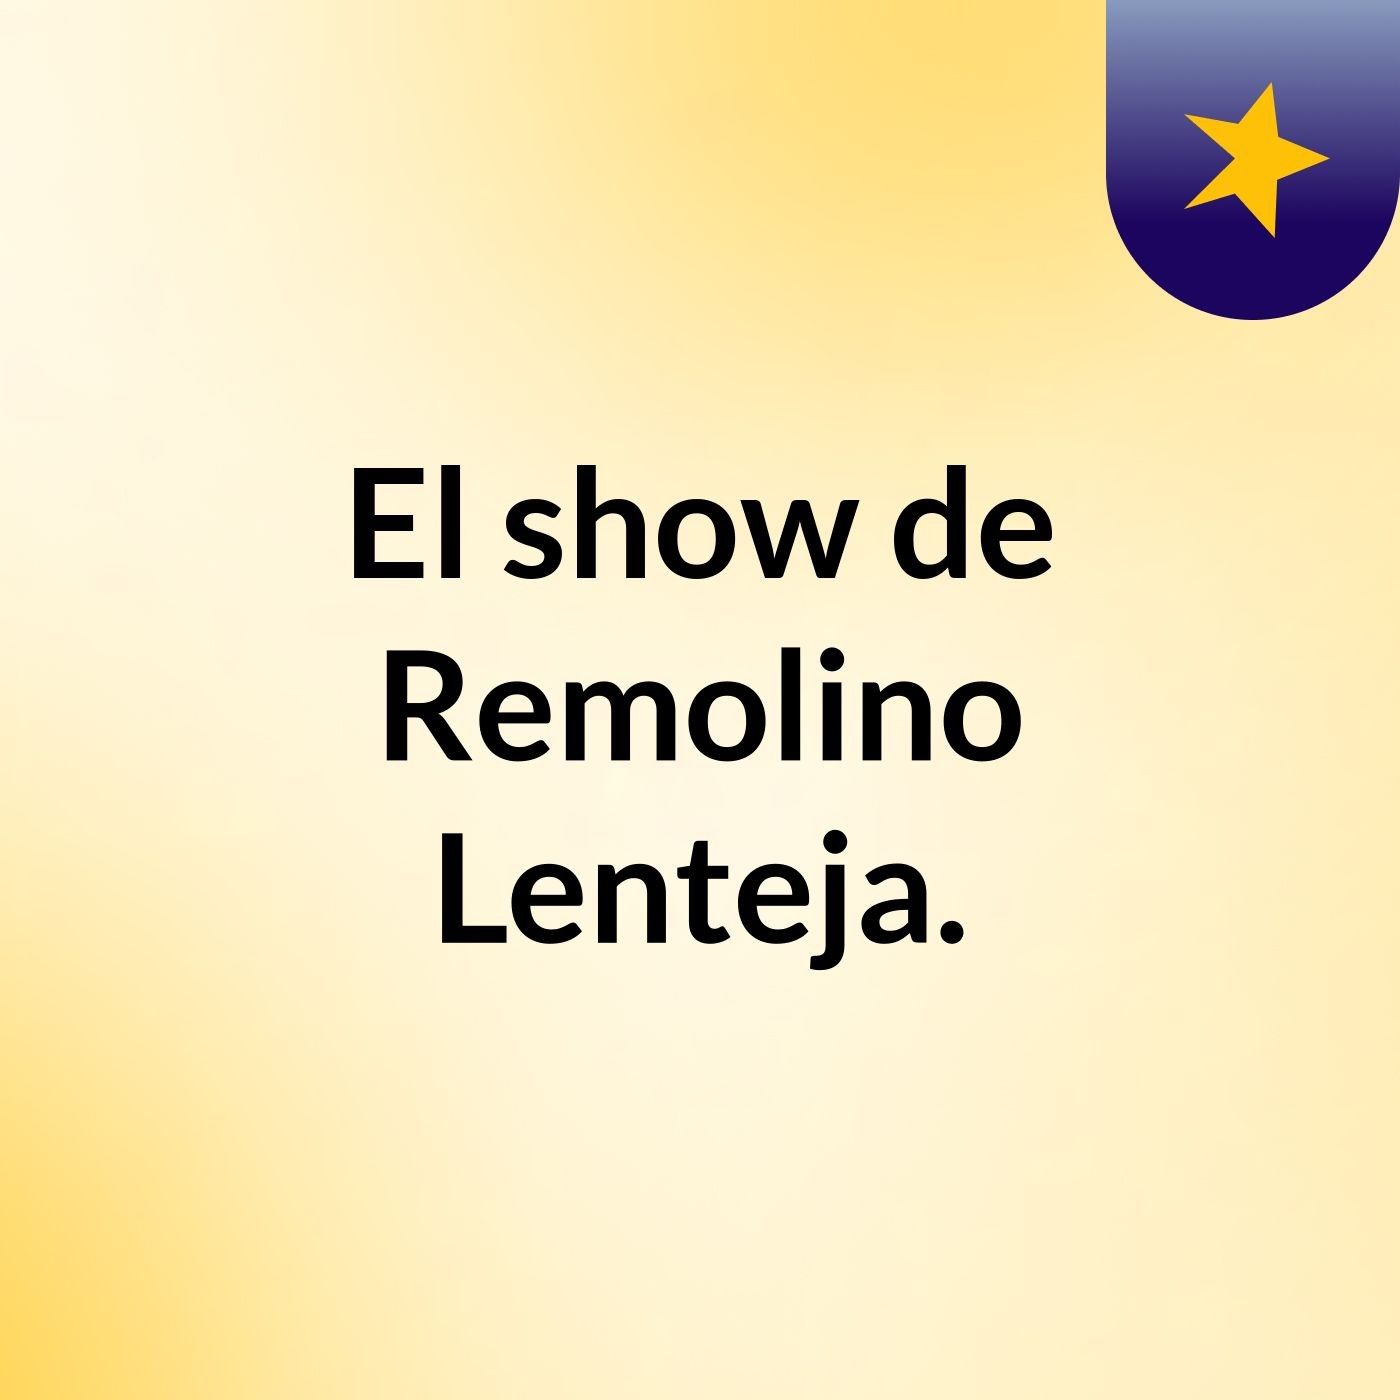 El show de Remolino Lenteja.